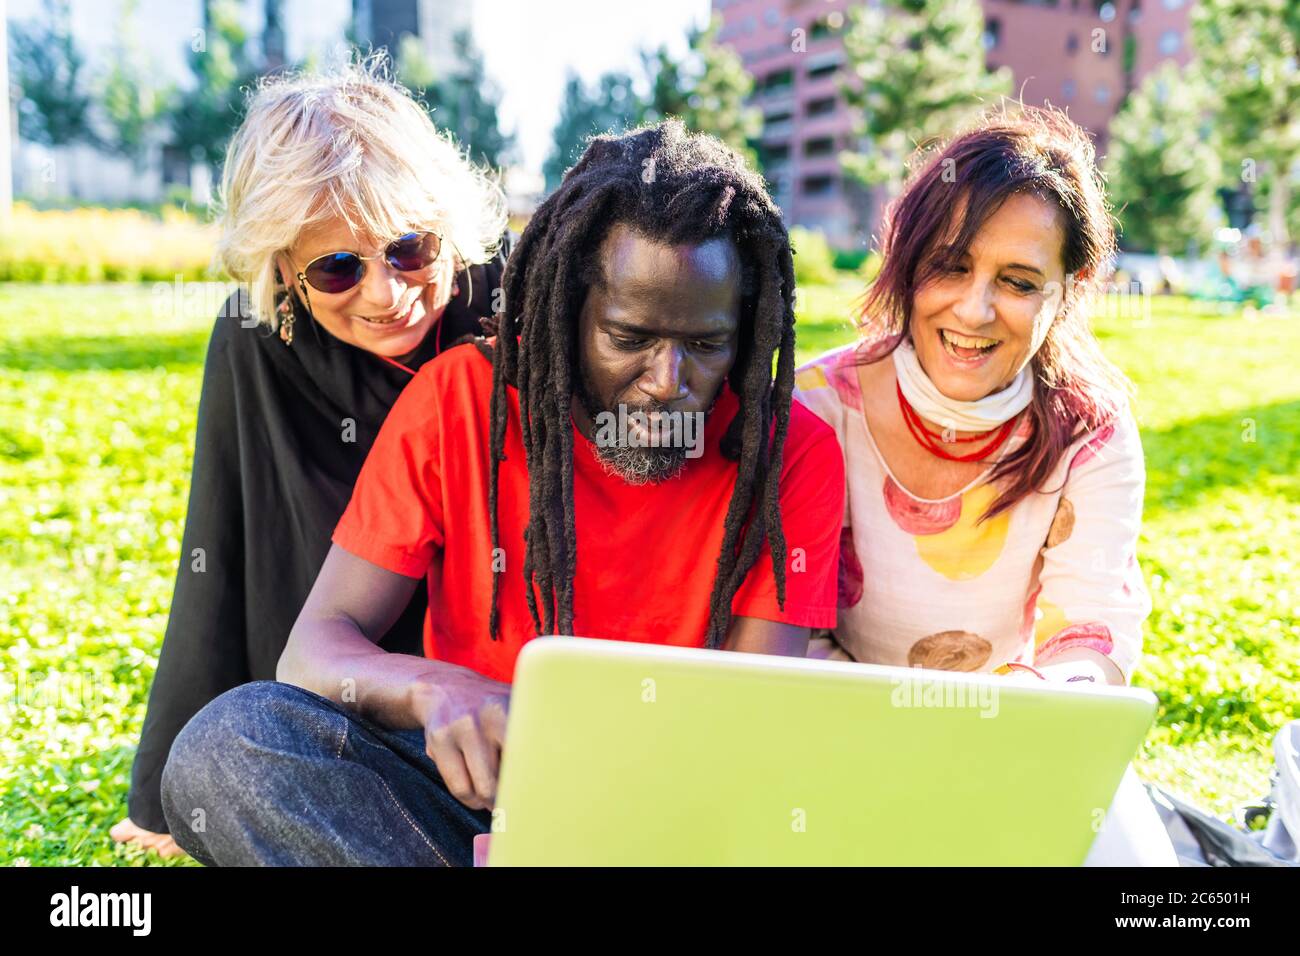 Uomo nero con dreadlock e due donne caucasiche seduti sul prato, guardando il computer portatile. Foto Stock